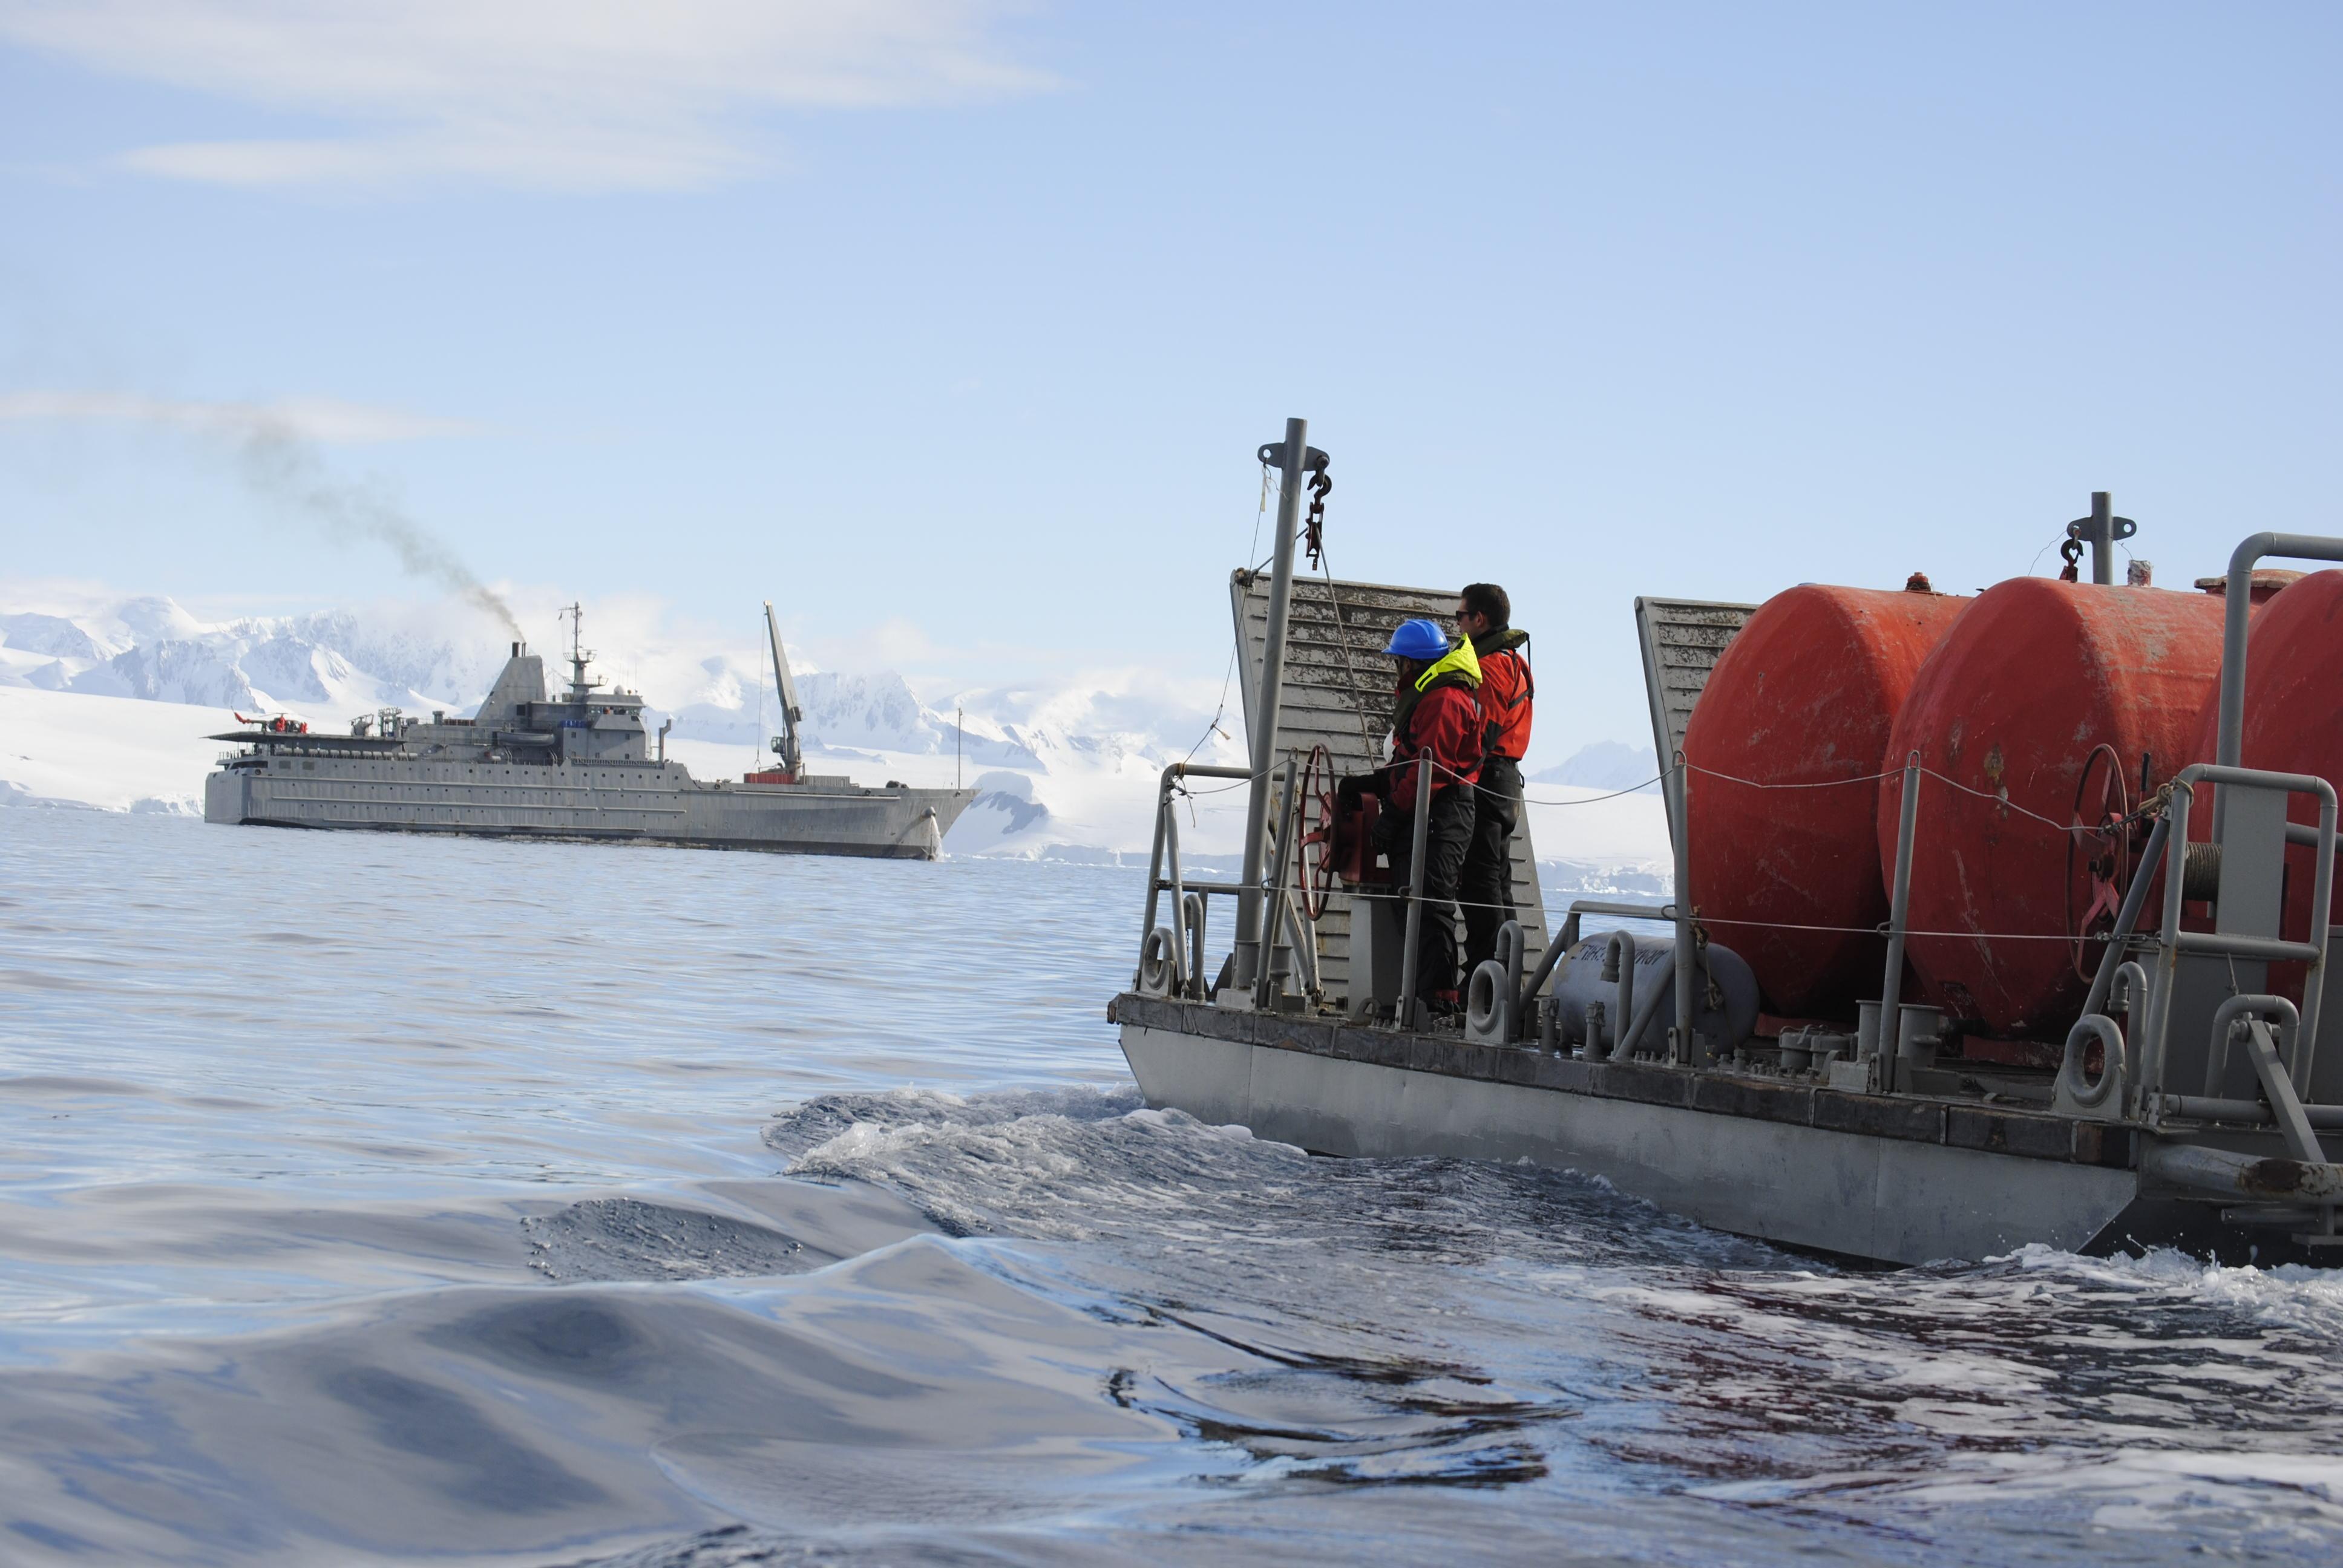 Las expediciones al continente blanco son organzadas por el Instituto Antártico Chileno (INACH) y la Armada Nacional durante los veranos australes.